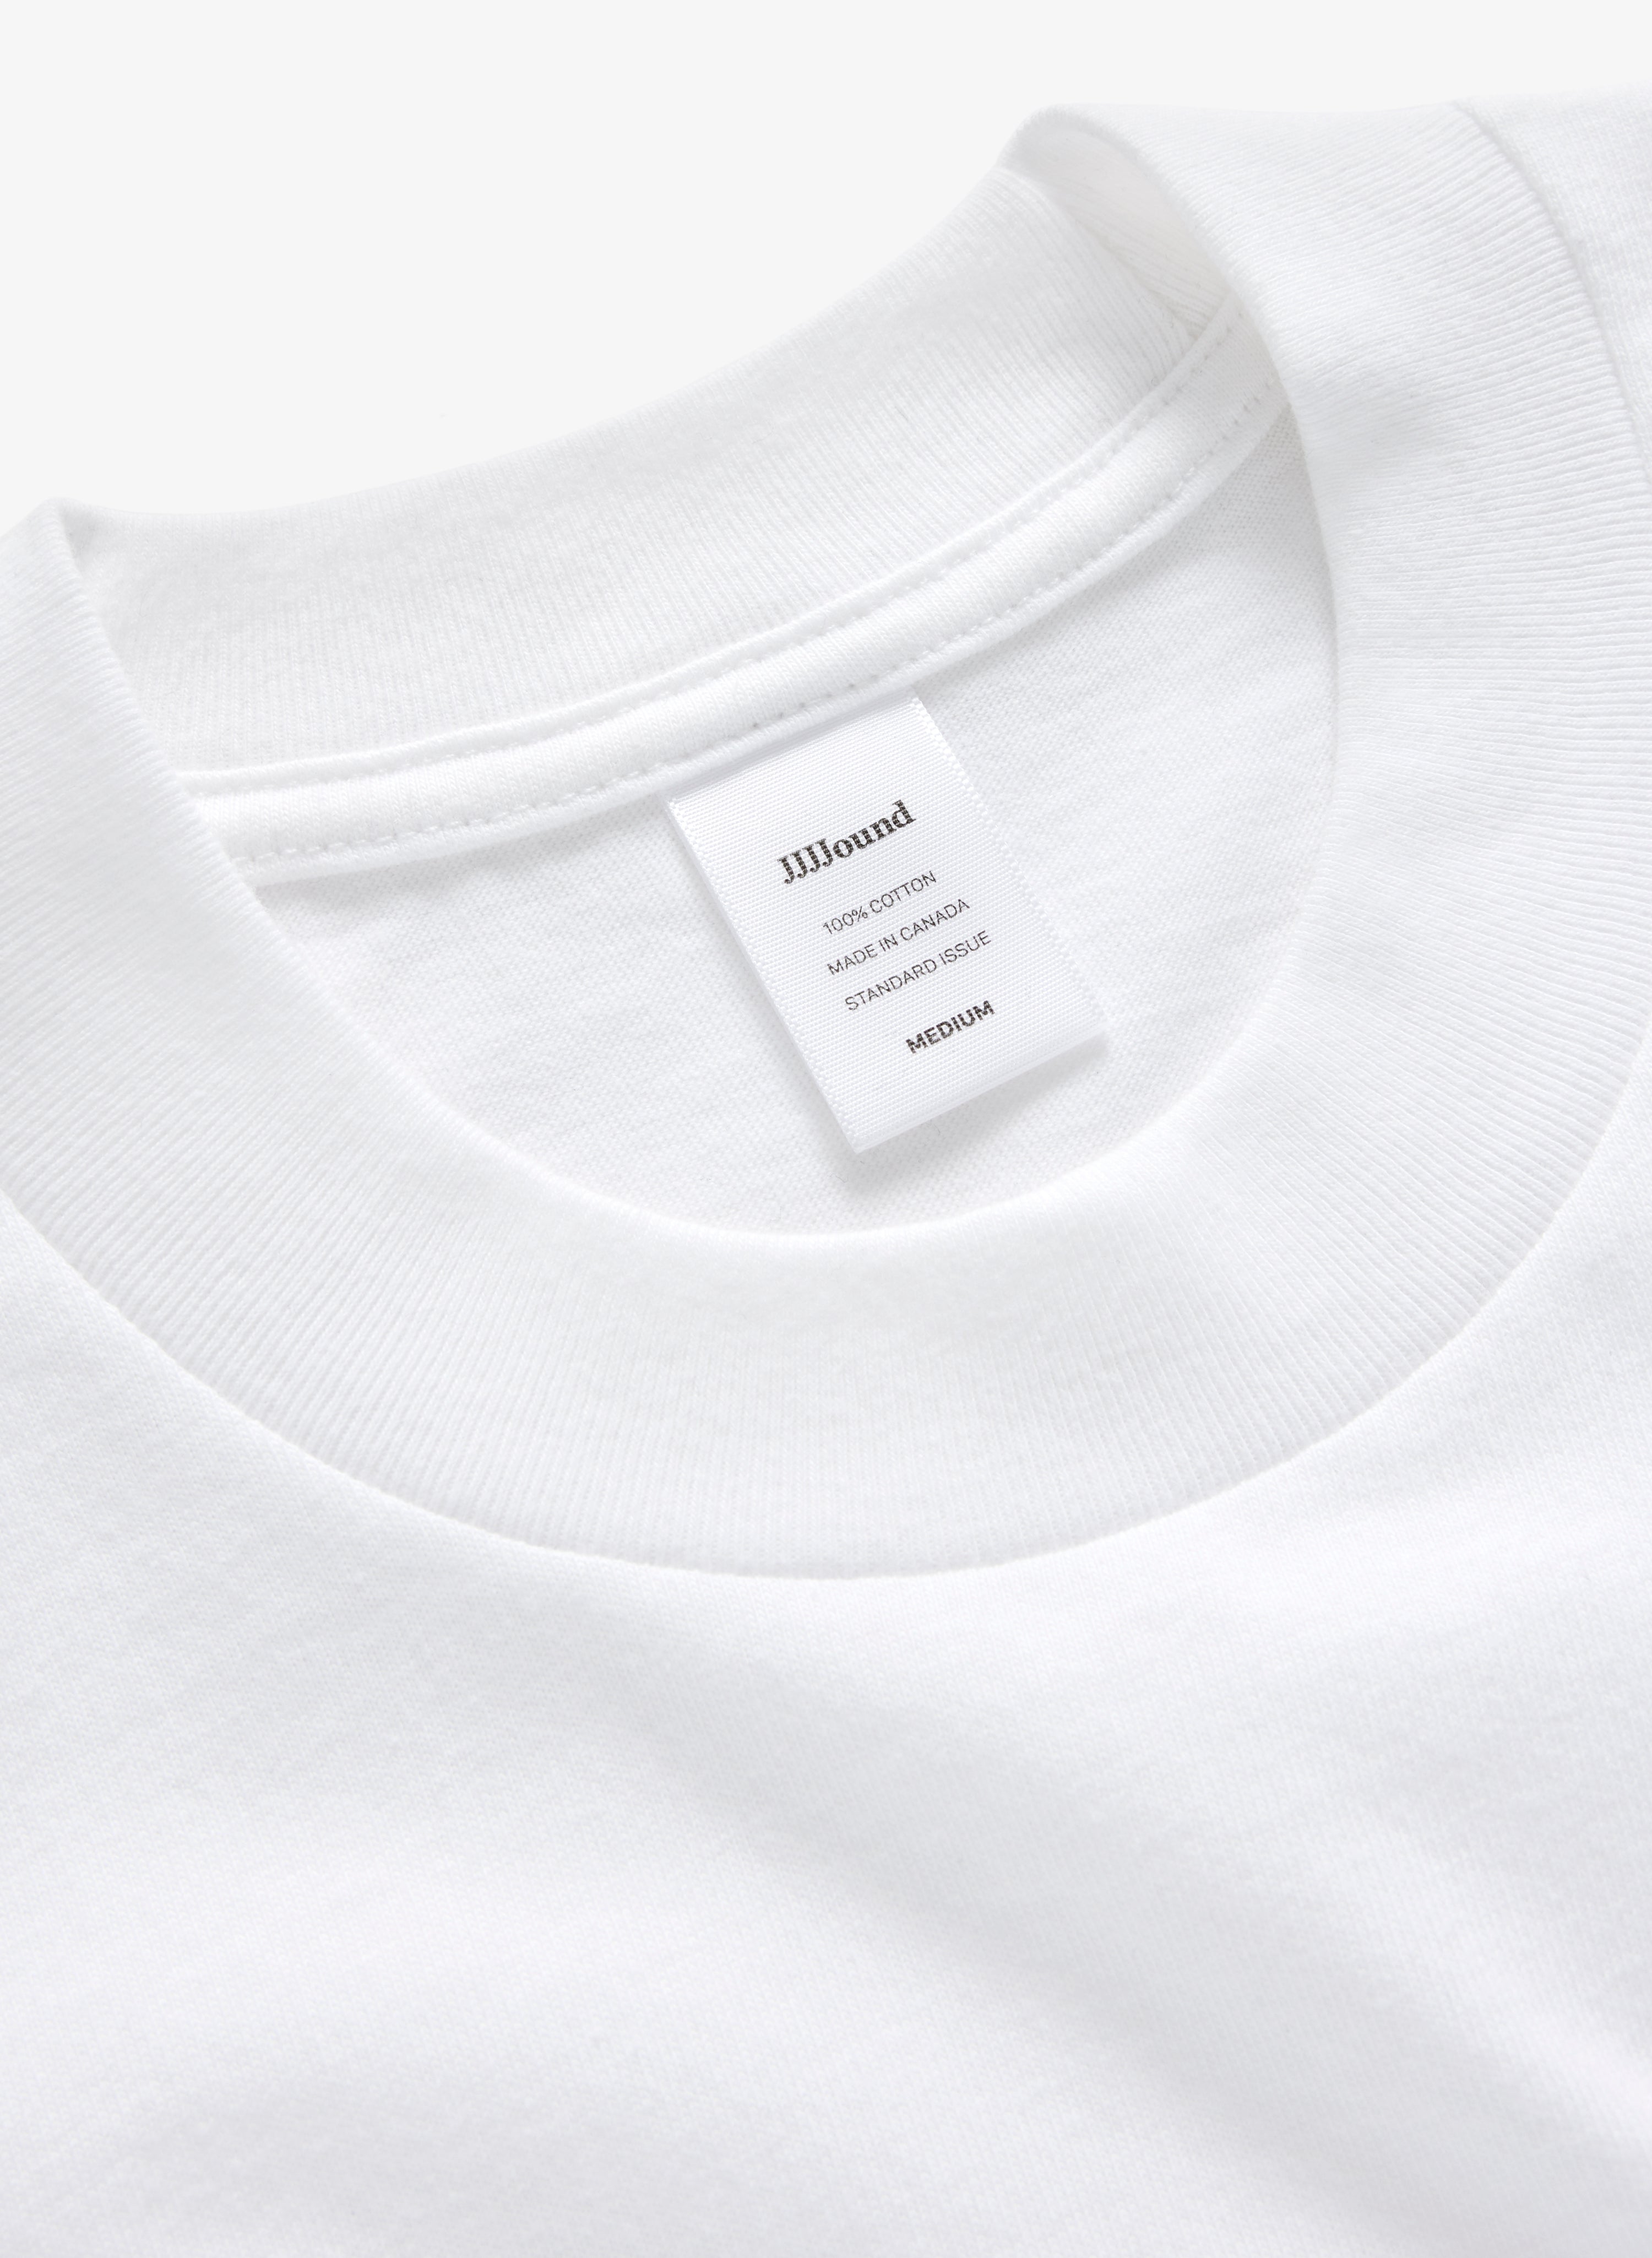 9,504円JJJJound J90 T-shirt Pocket White L